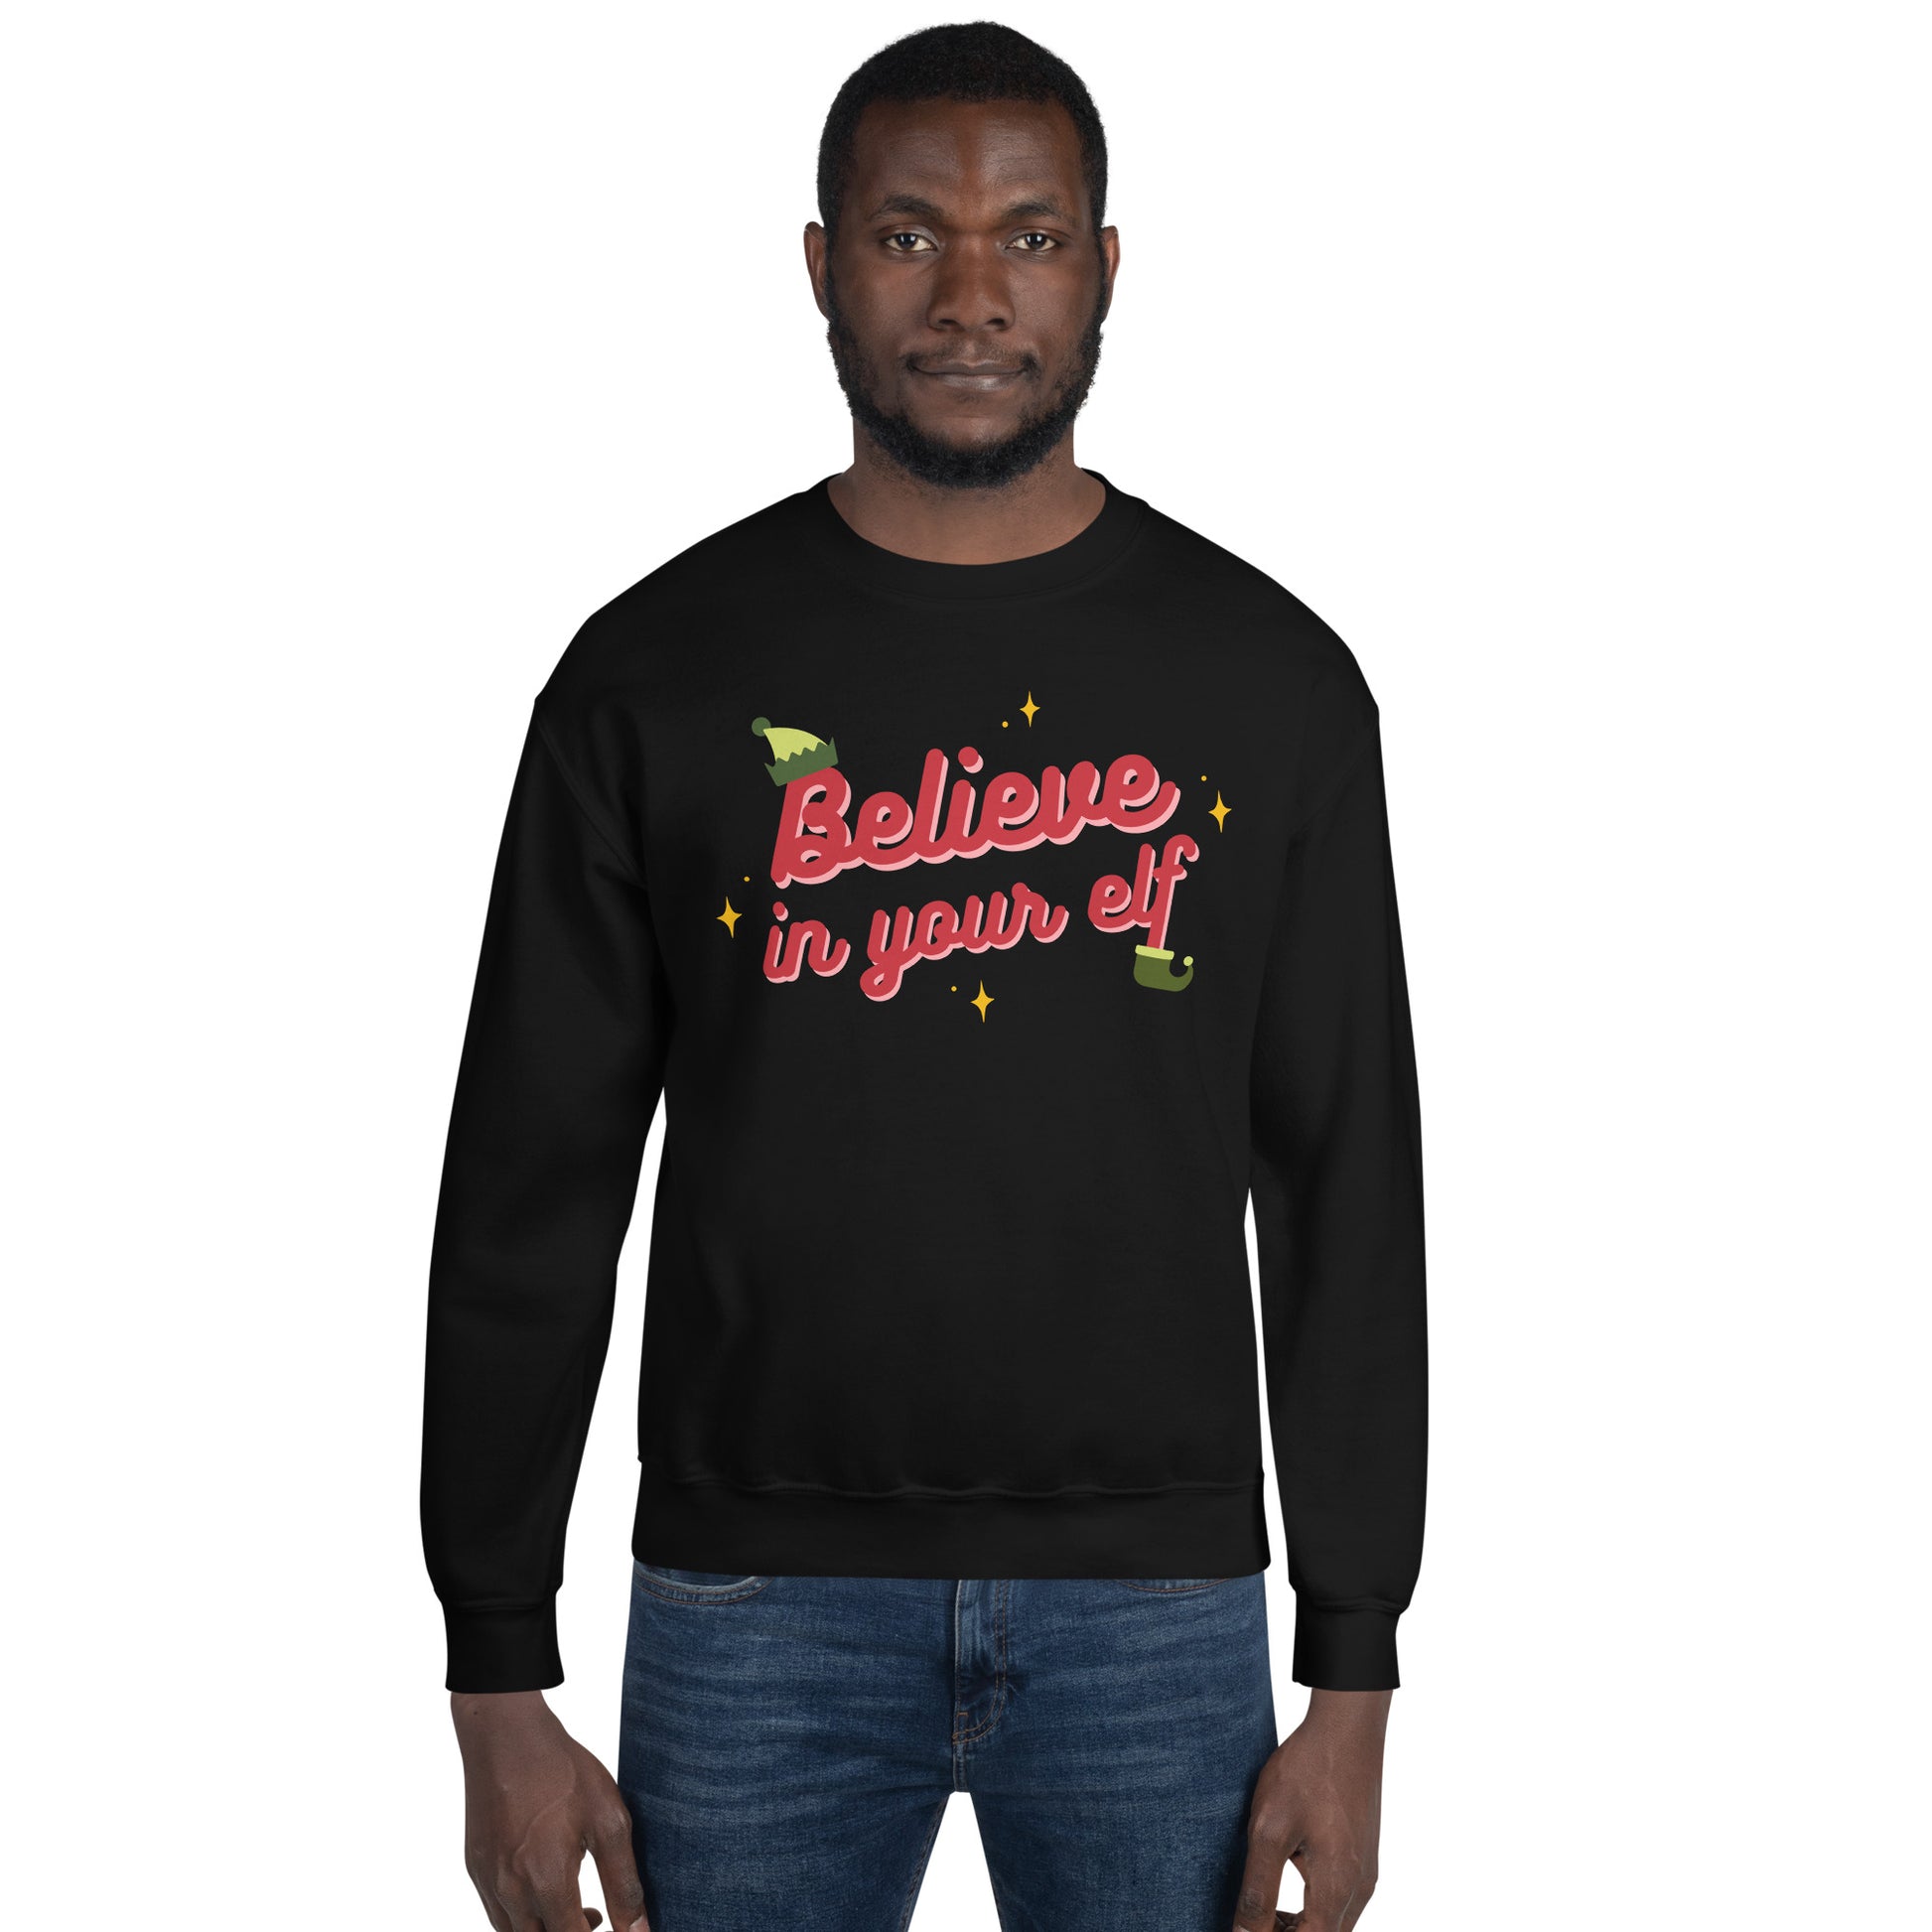 Believe in your Elf — Adult Unisex Crewneck Sweatshirt – Outshine Labels